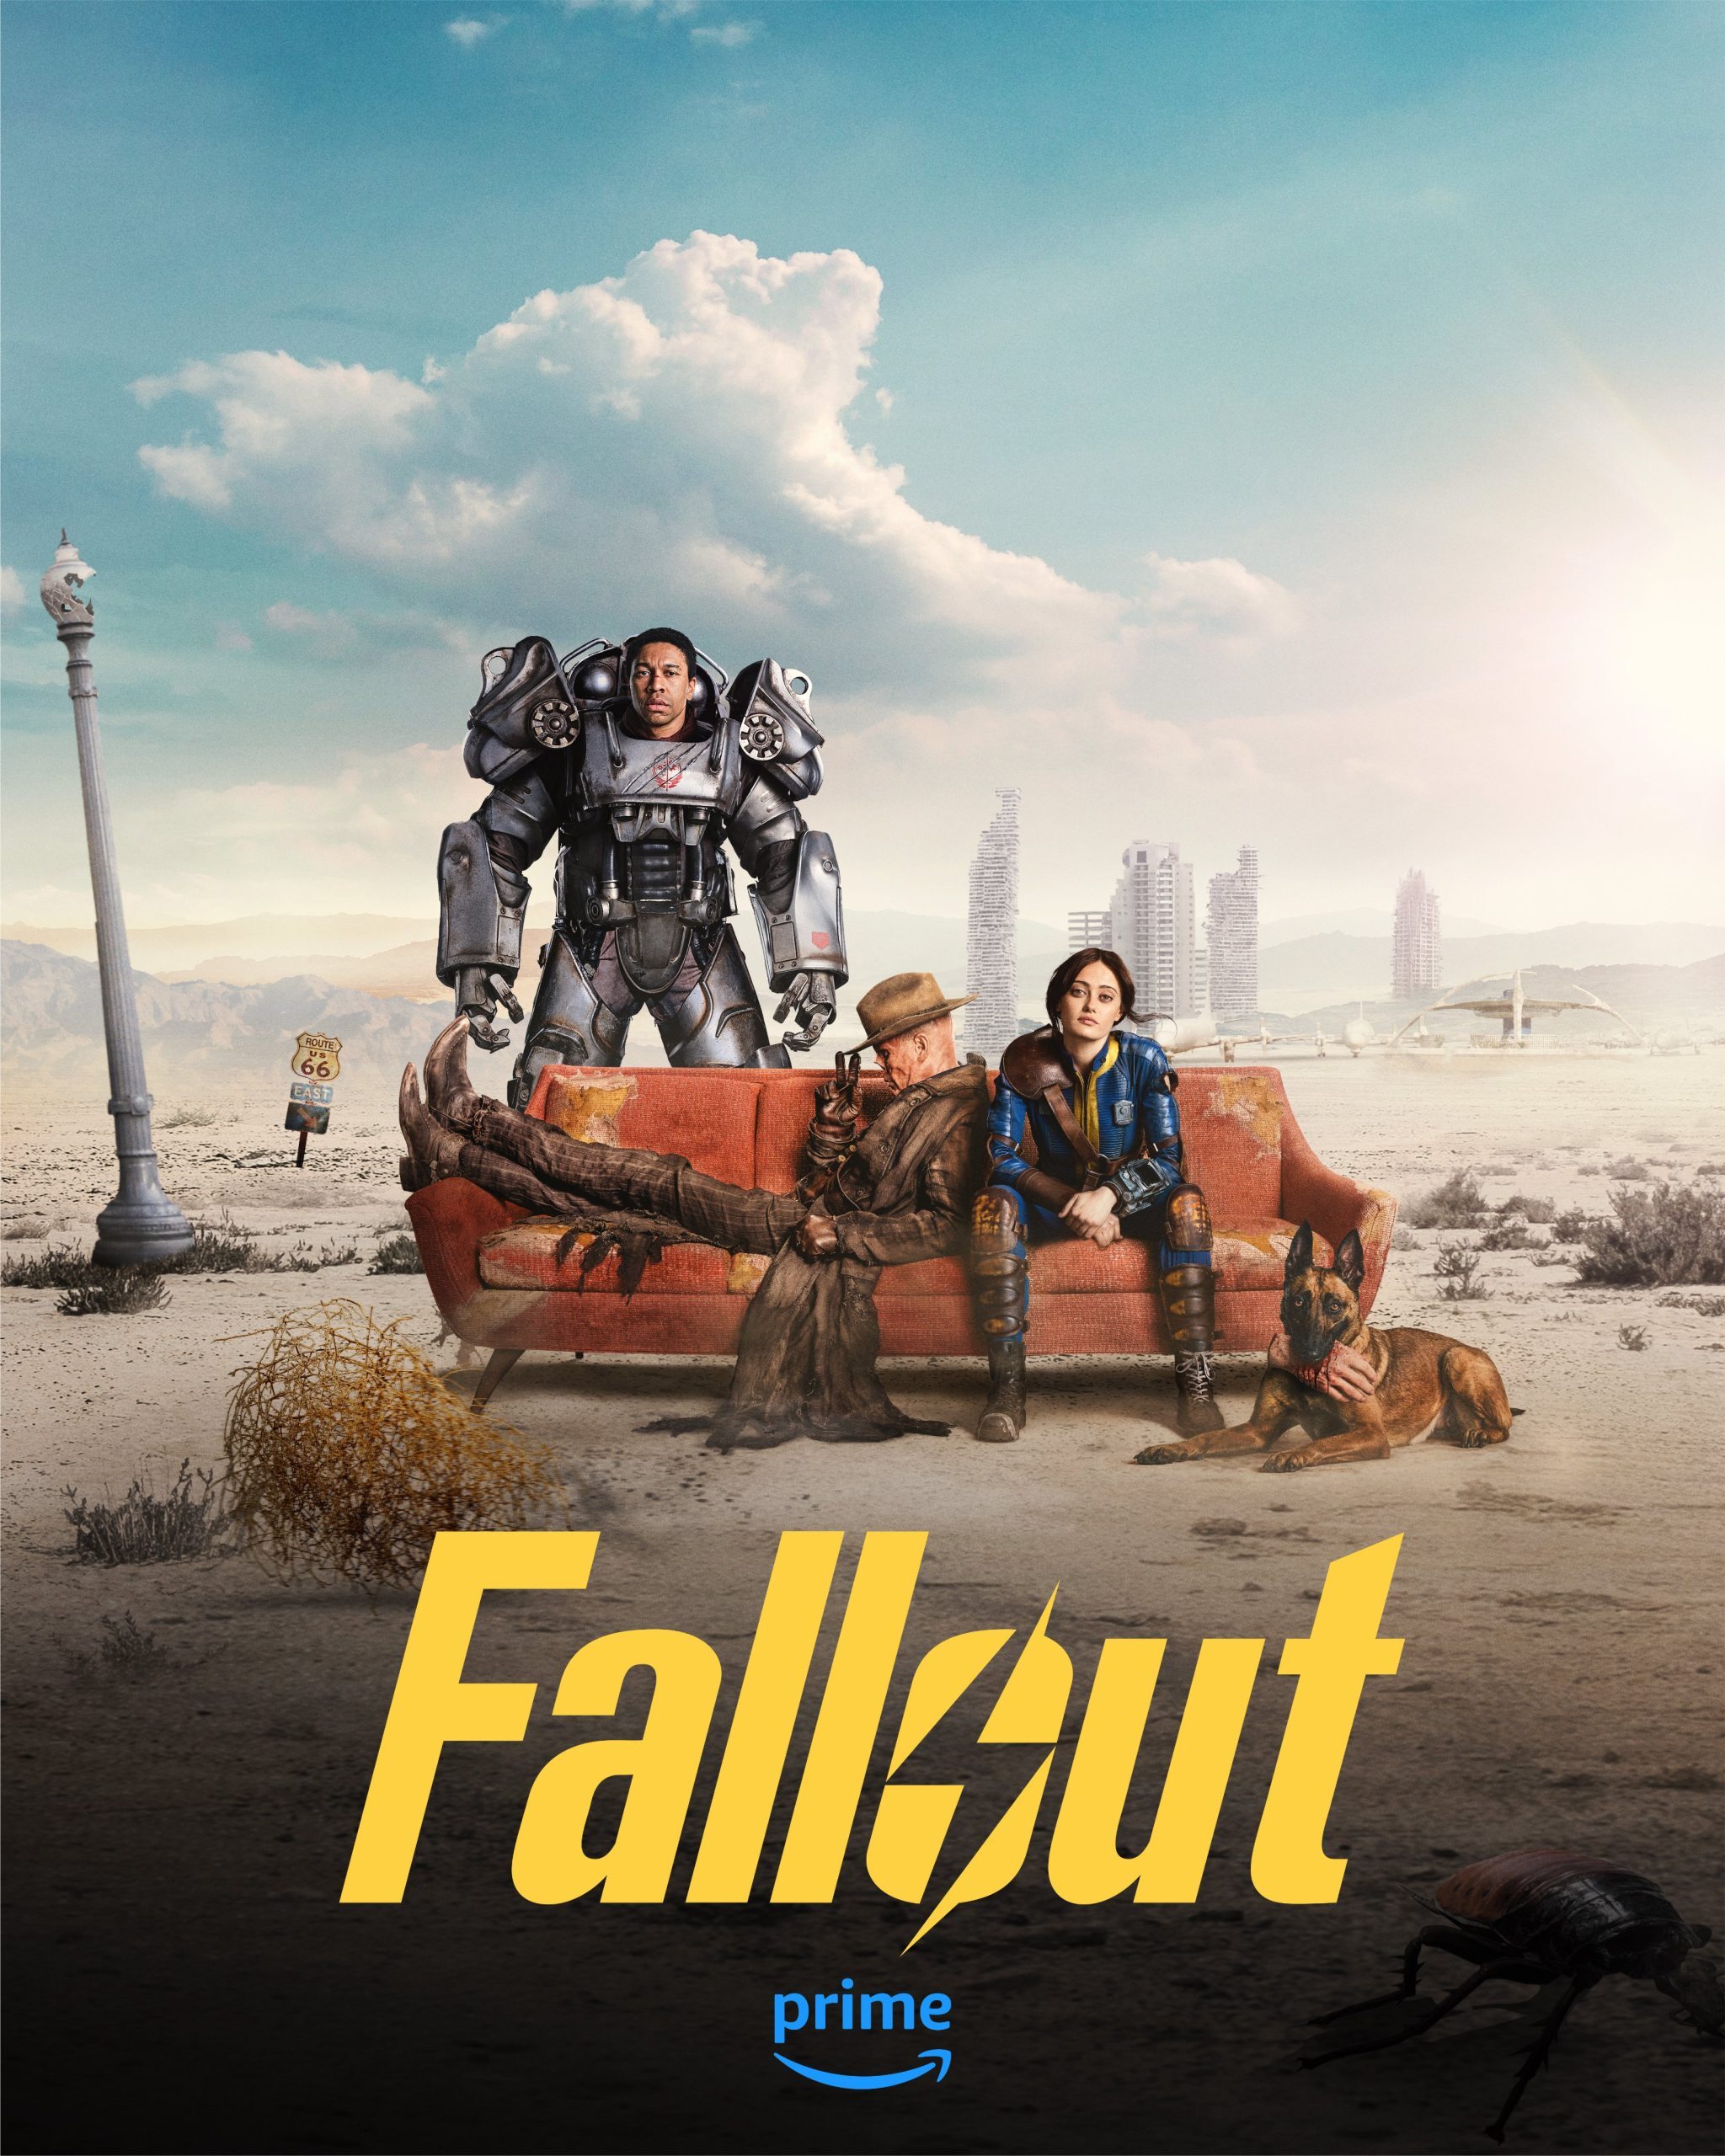 استقبال از Fallout 76 بیشتر شده است | وقتی سریال به کمک بازی می‌آید